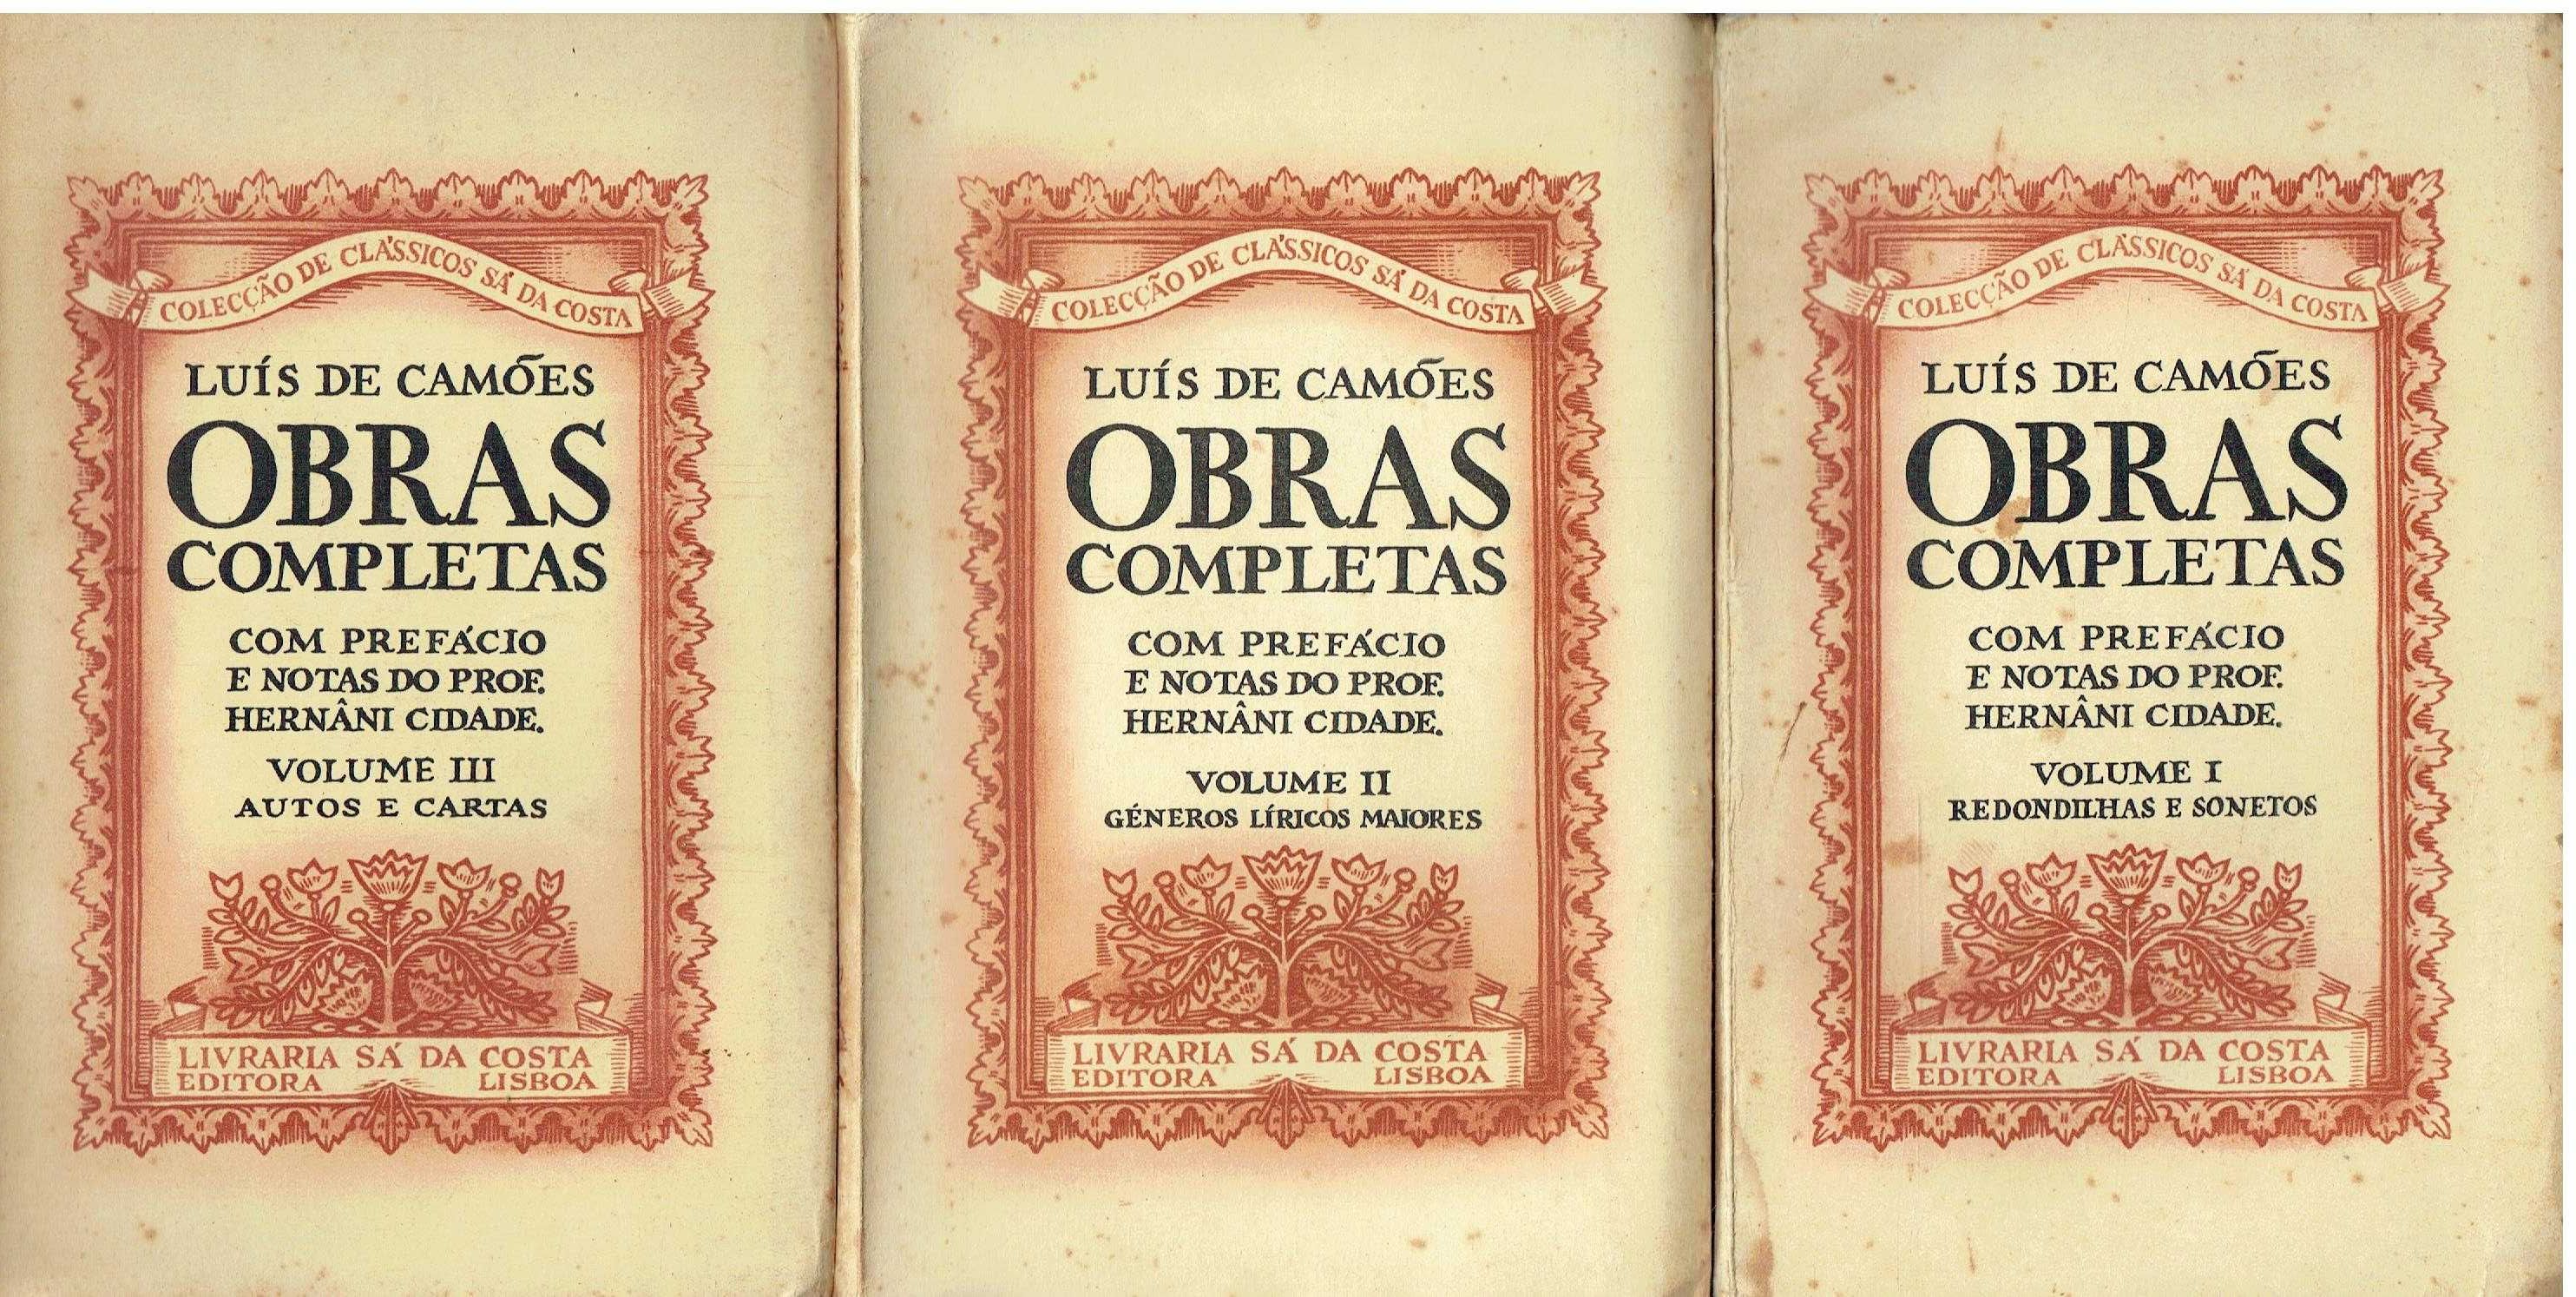 11127

Luís de Camões,
Colecção completa 3 vols,